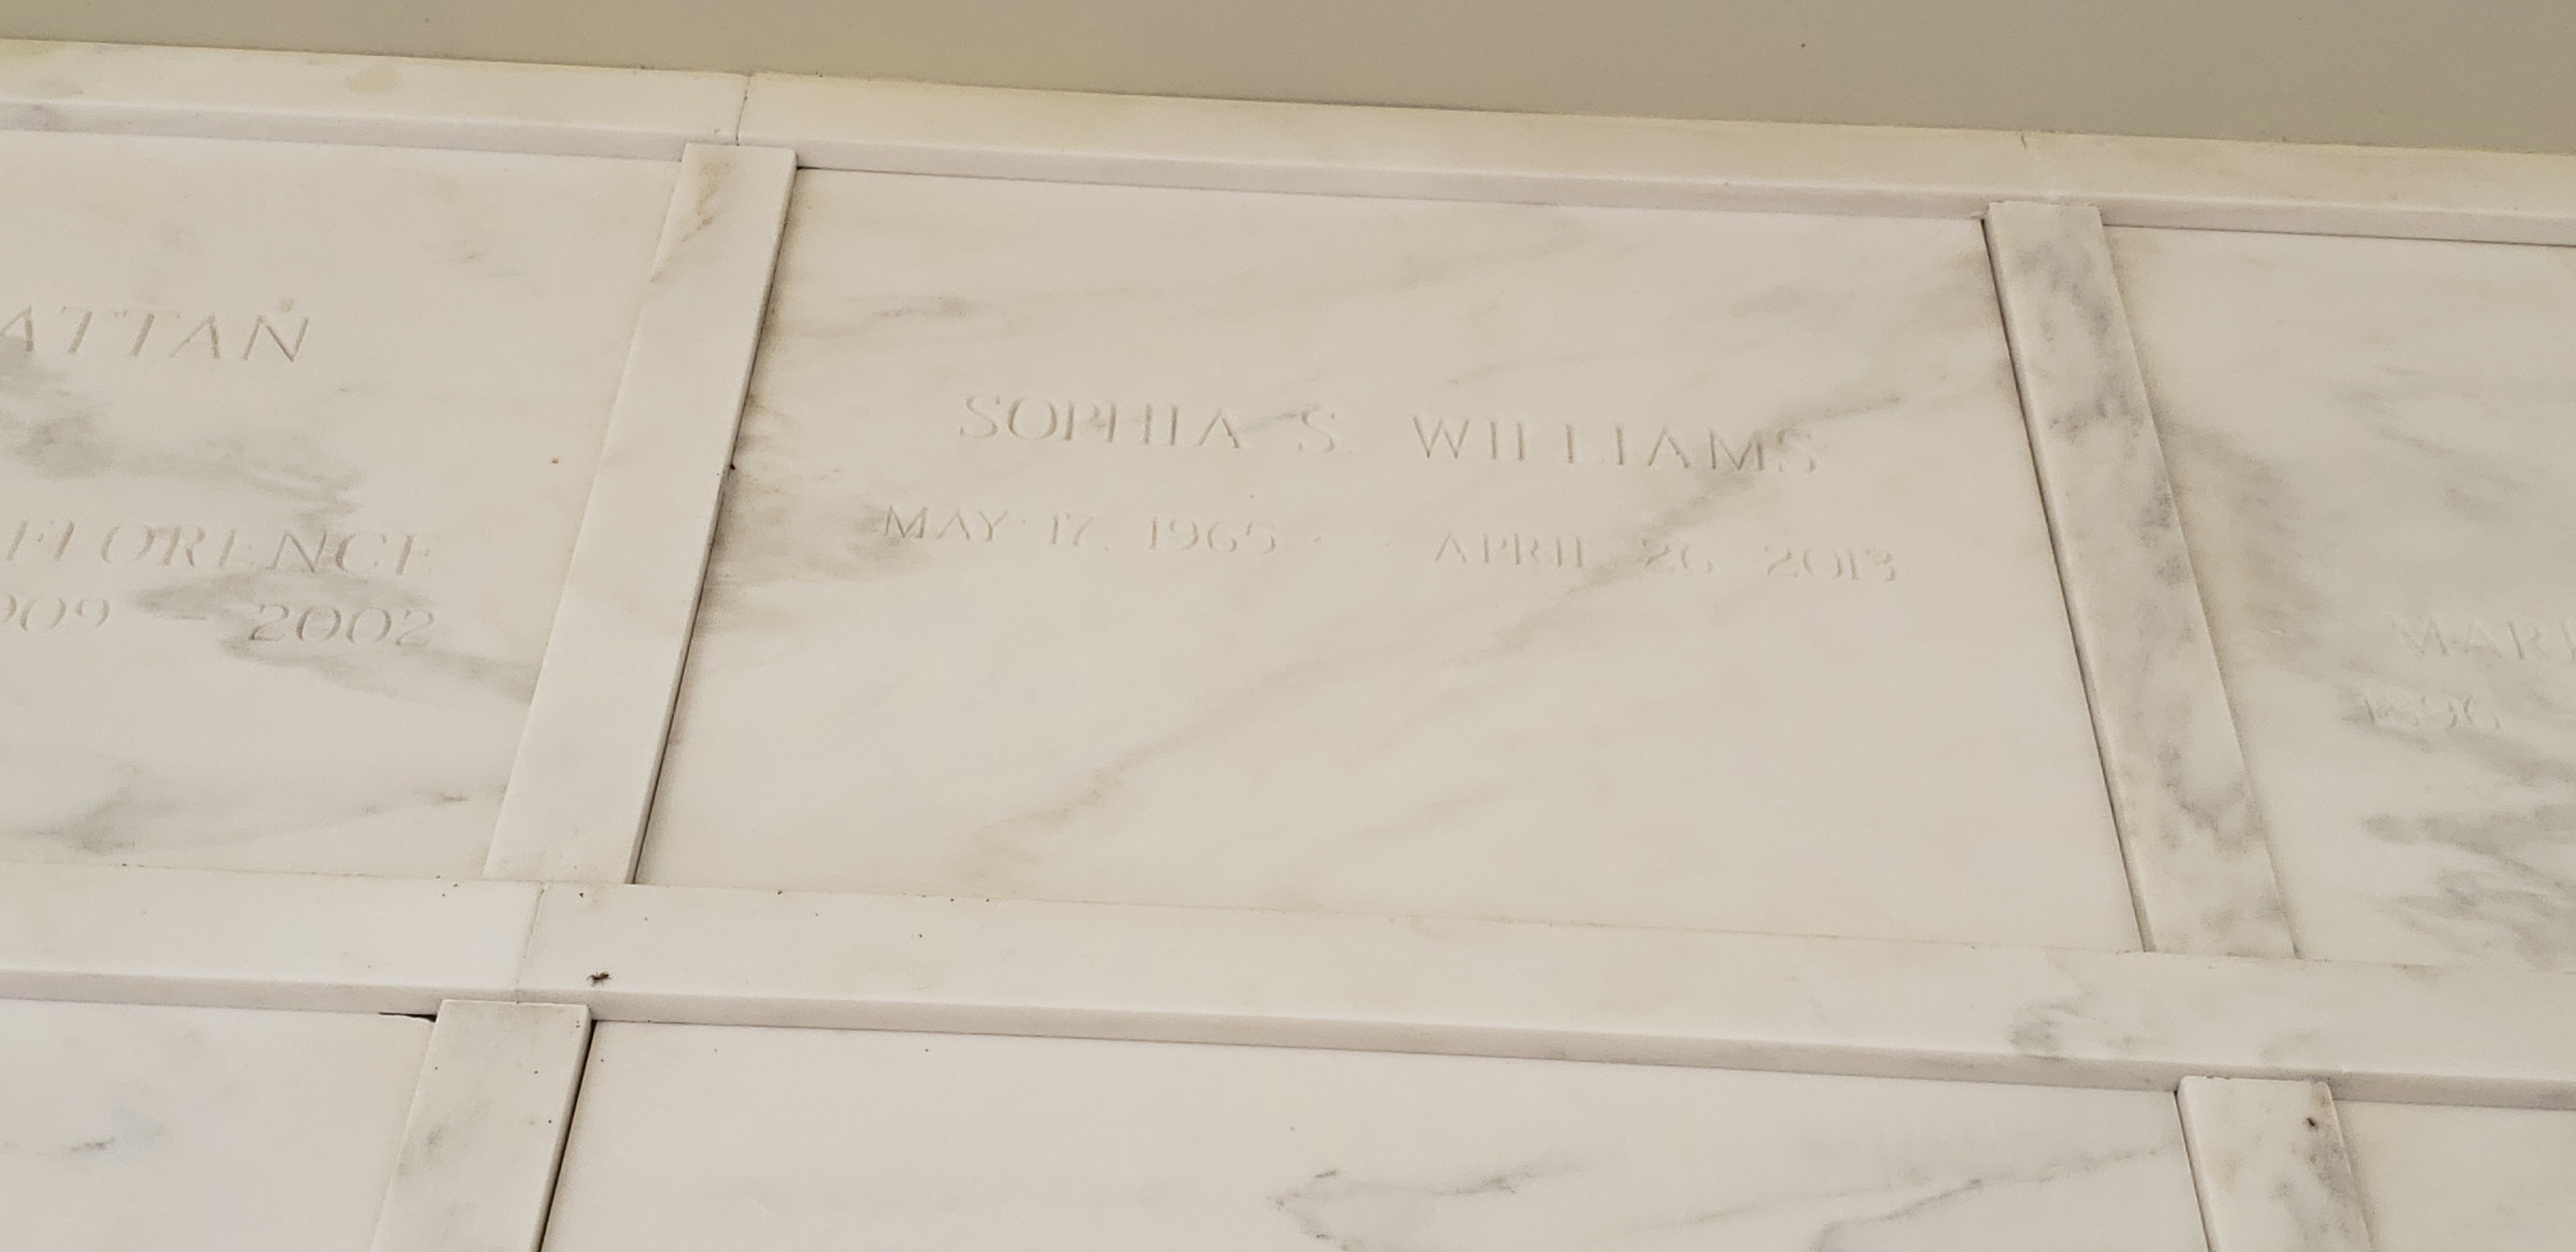 Sophia S Williams